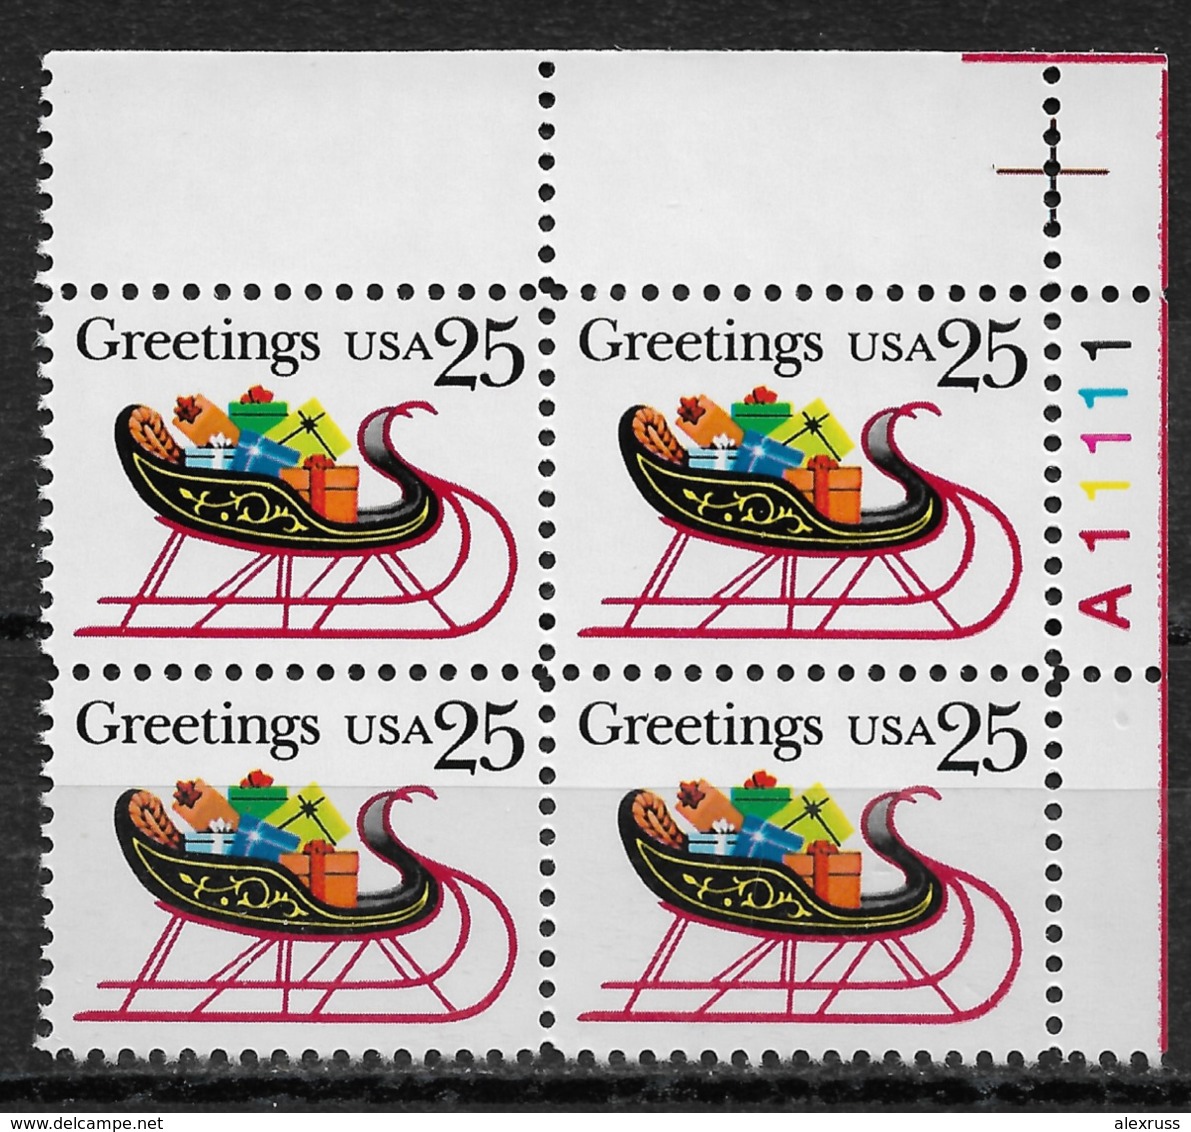 USA 1989, Christmas Greetings 25c, Plate Block Scott # 2428,VF MNH**OG - Christmas